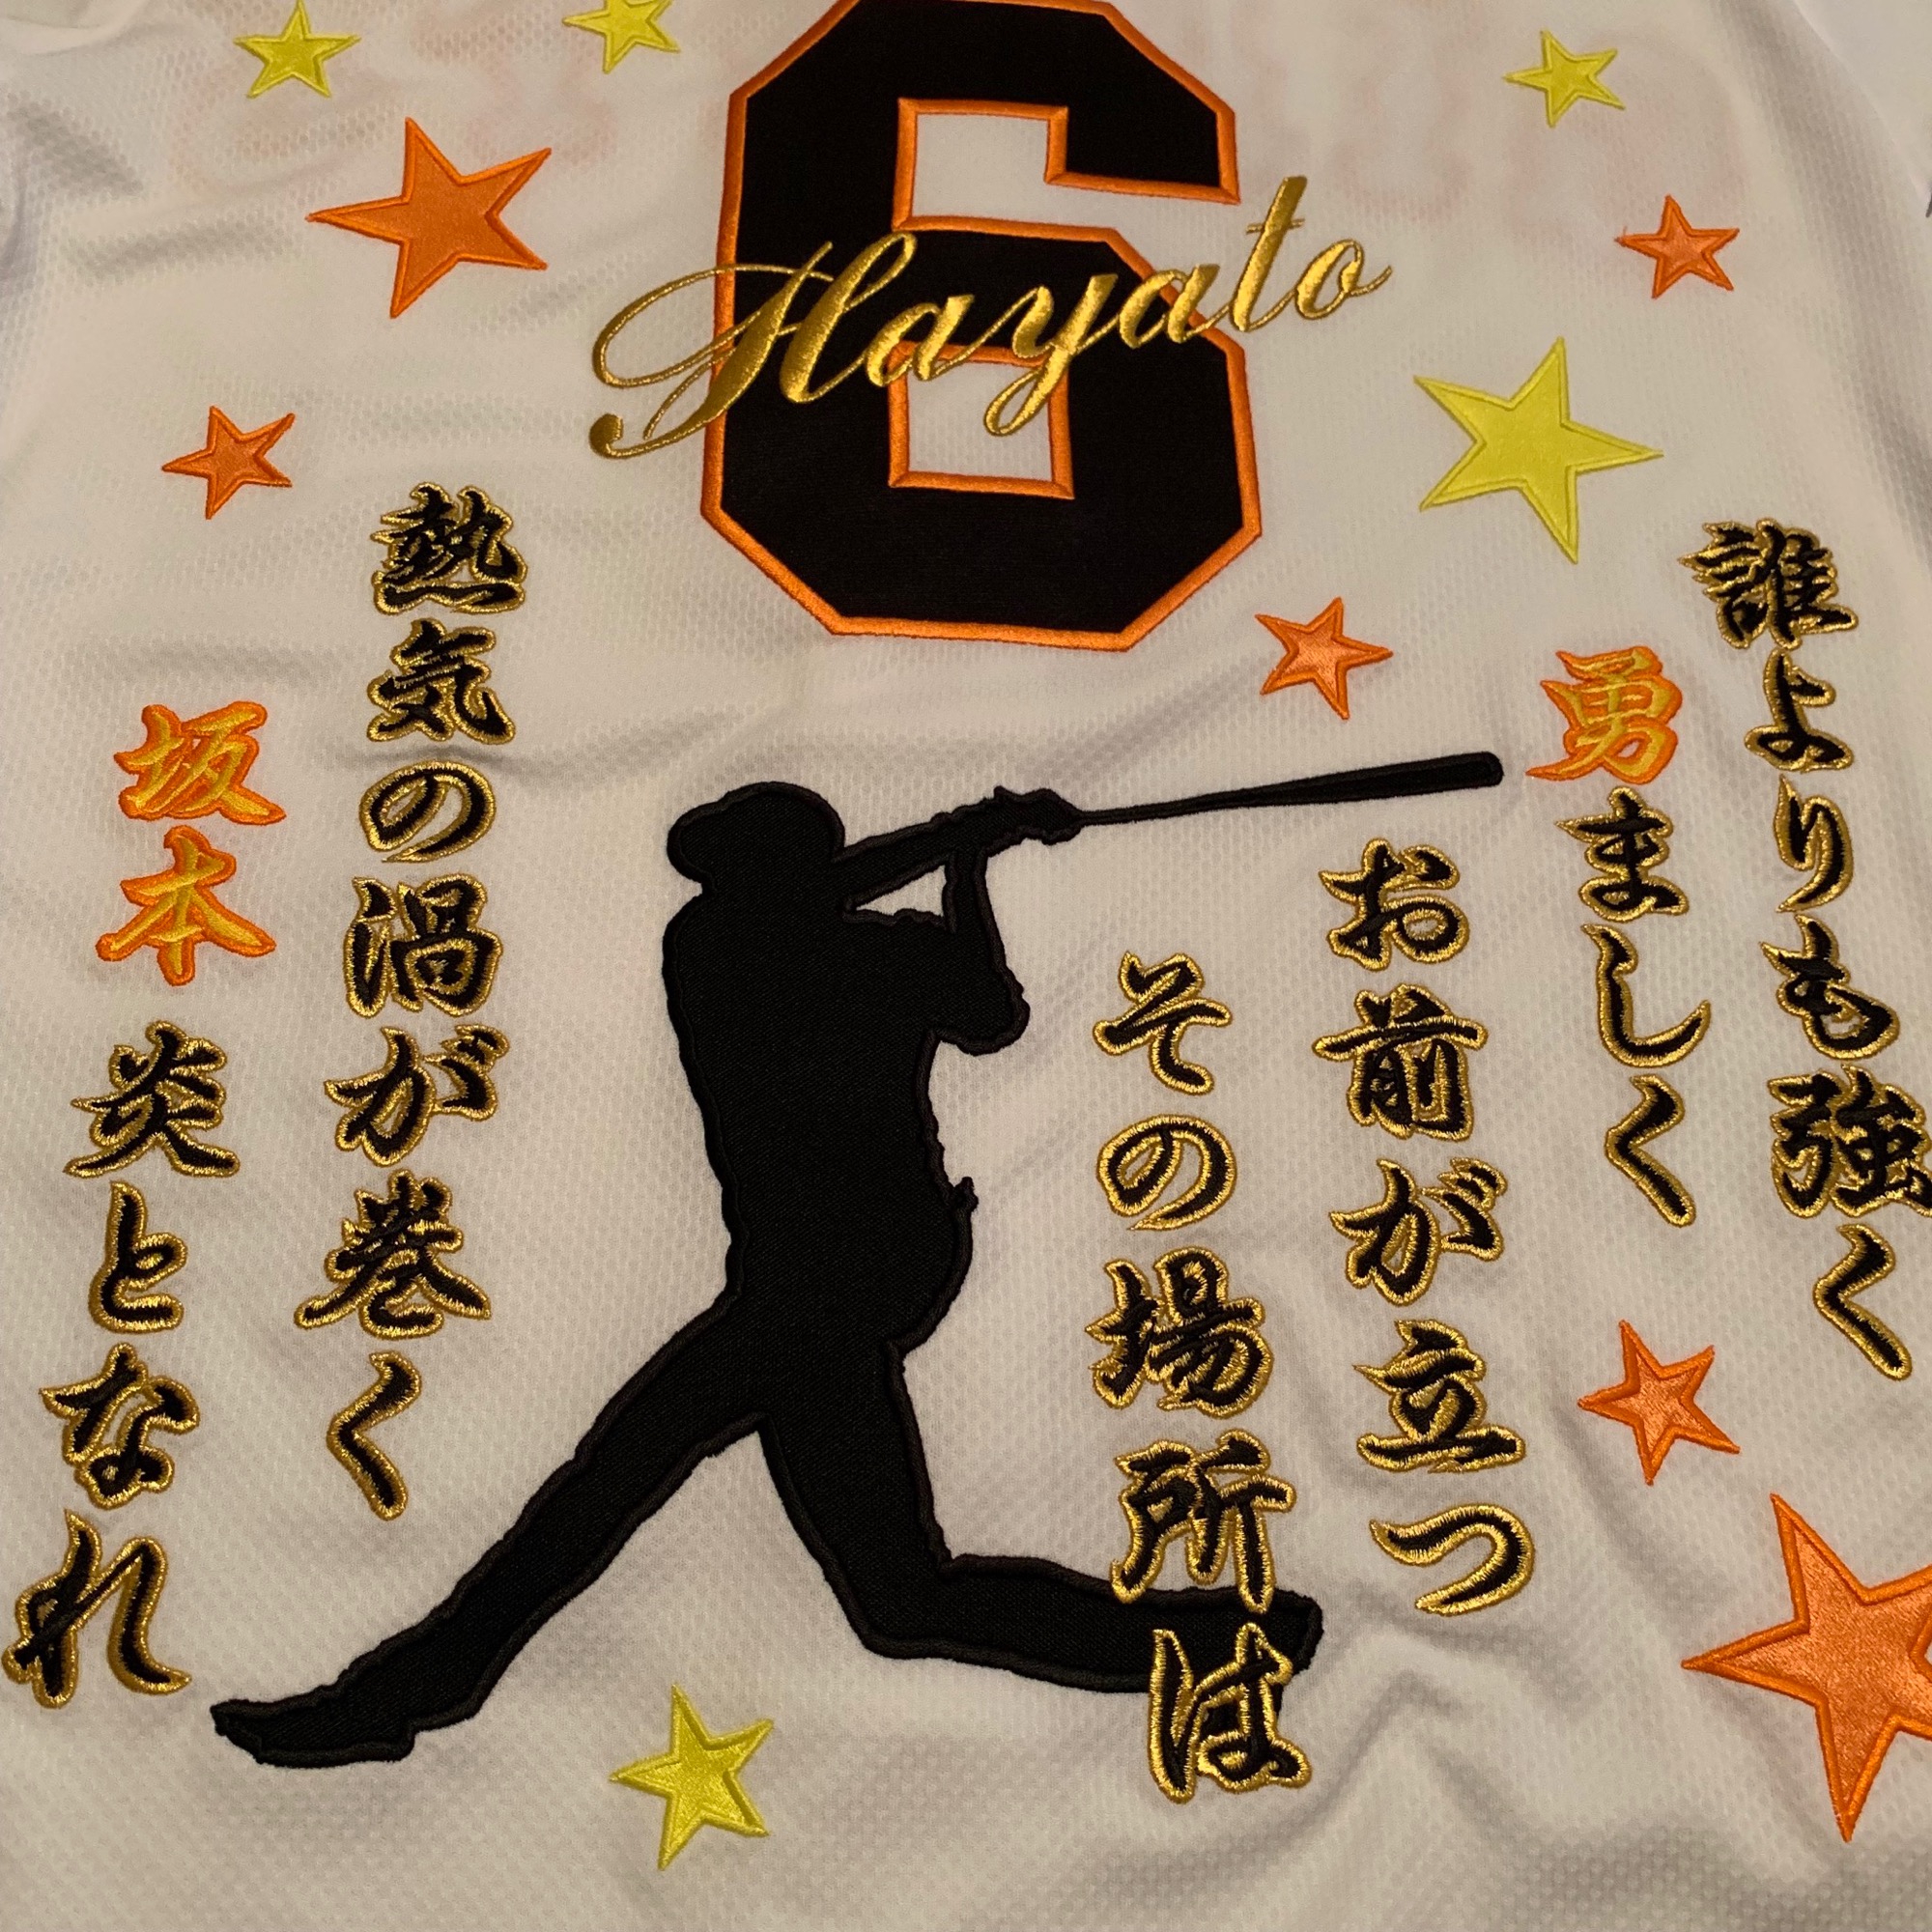 新着 【lapin様専用】UA 巨人 坂本勇人 選手 #6 刺繍ユニフォーム 